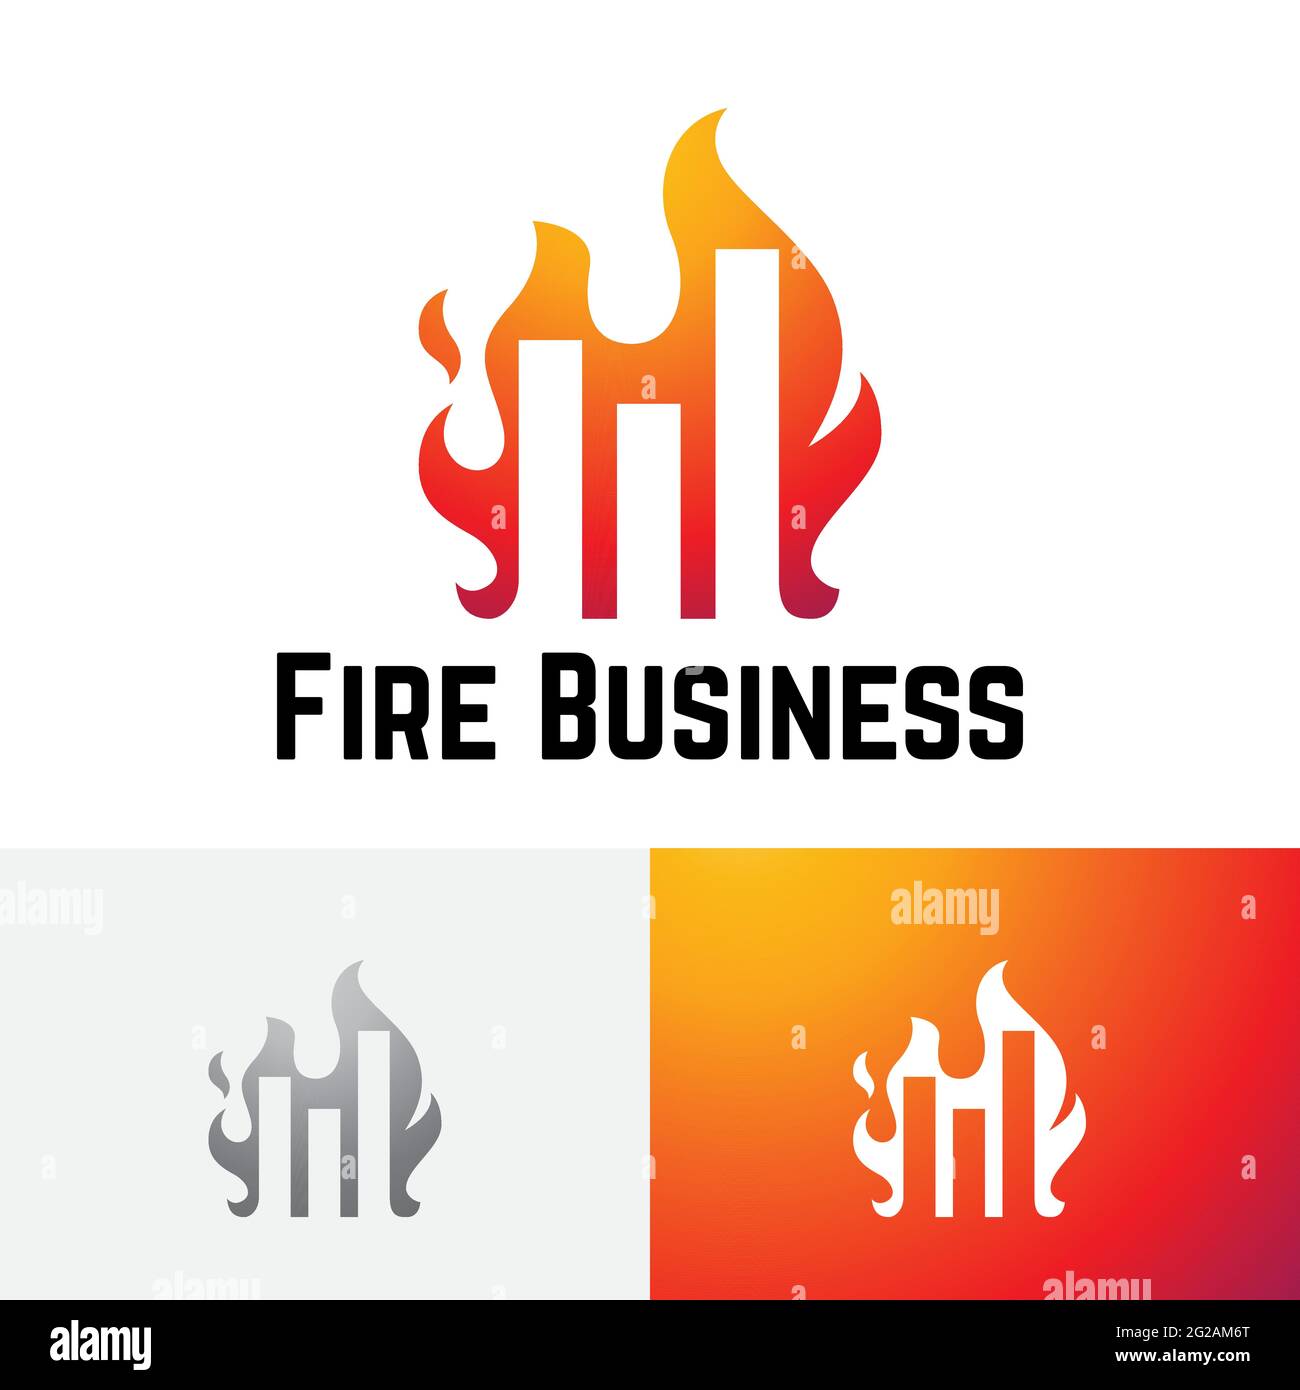 Logotipo del gráfico de barras financiero de Hot Fire Flame Investing Business Ilustración del Vector